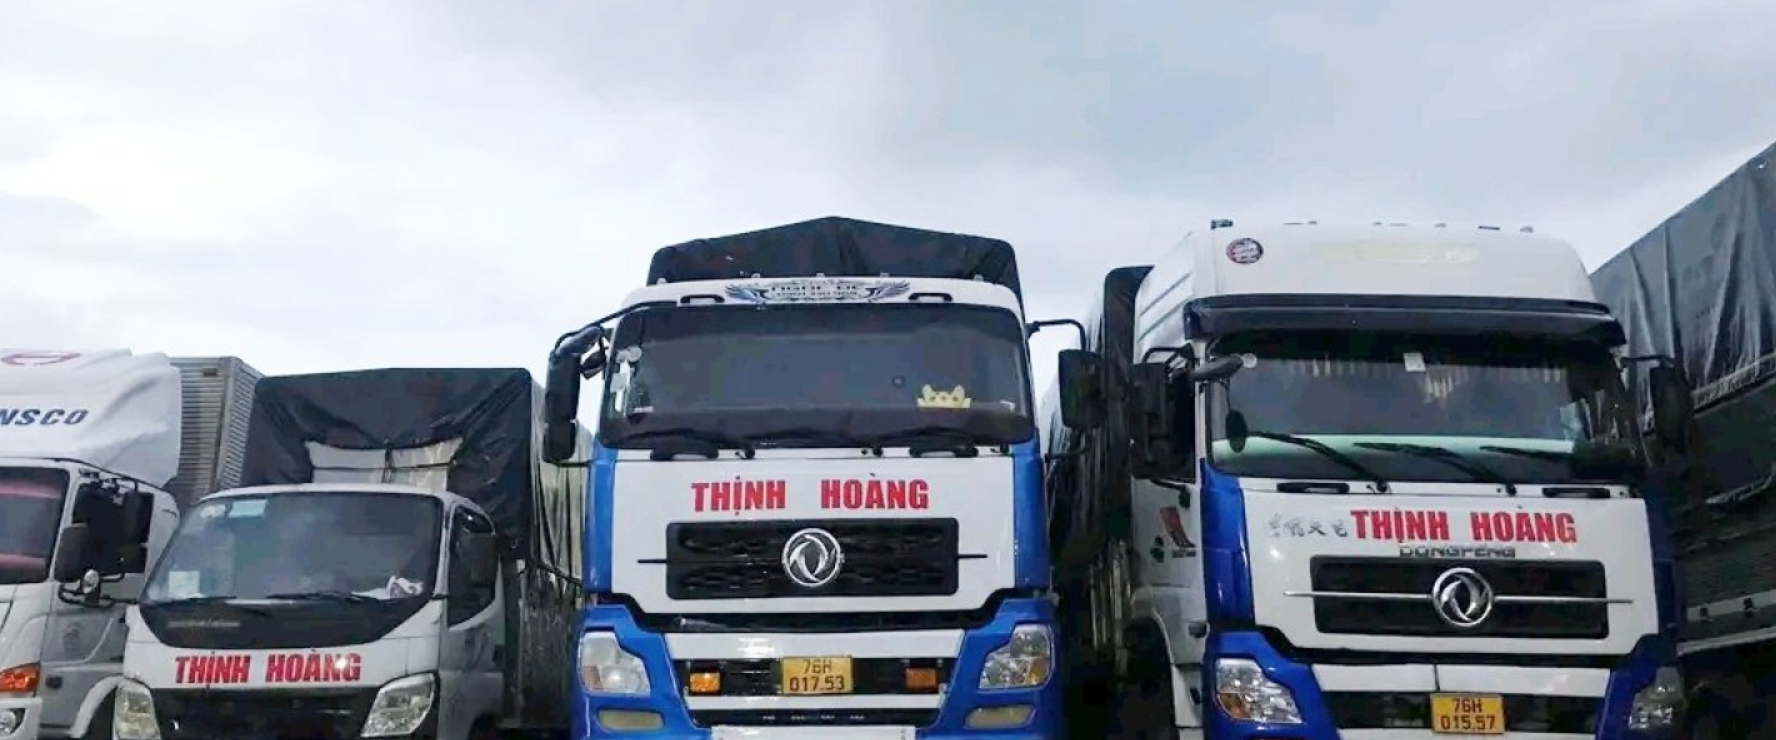 Chành xe gửi hàng về Thạnh Phú Bến Tre - Thịnh Hoàng